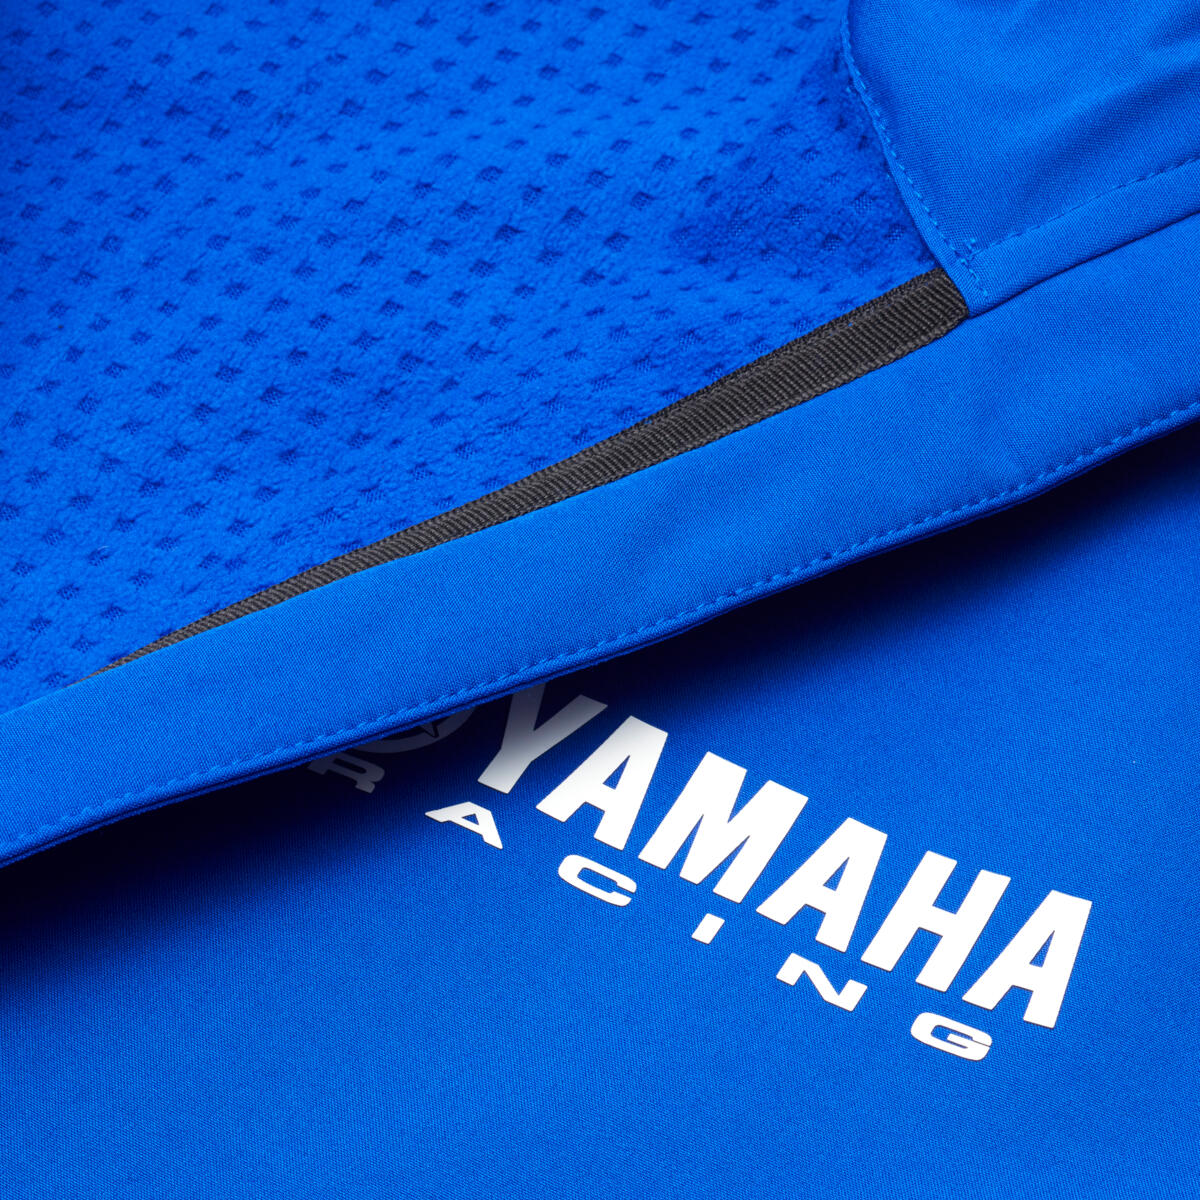 Paddock Blue Softshell-takissa on kiinteä huppu ja fleecevuori, jotka lisäävät lämpöä ja mukavuutta tuulisina päivinä. Ensiluokkaisessa softshell-takissa on painetut Yamaha Racing -logot rinnassa ja hihoissa, ja takissa on useita mustavalkoisia kontrastielementtejä.